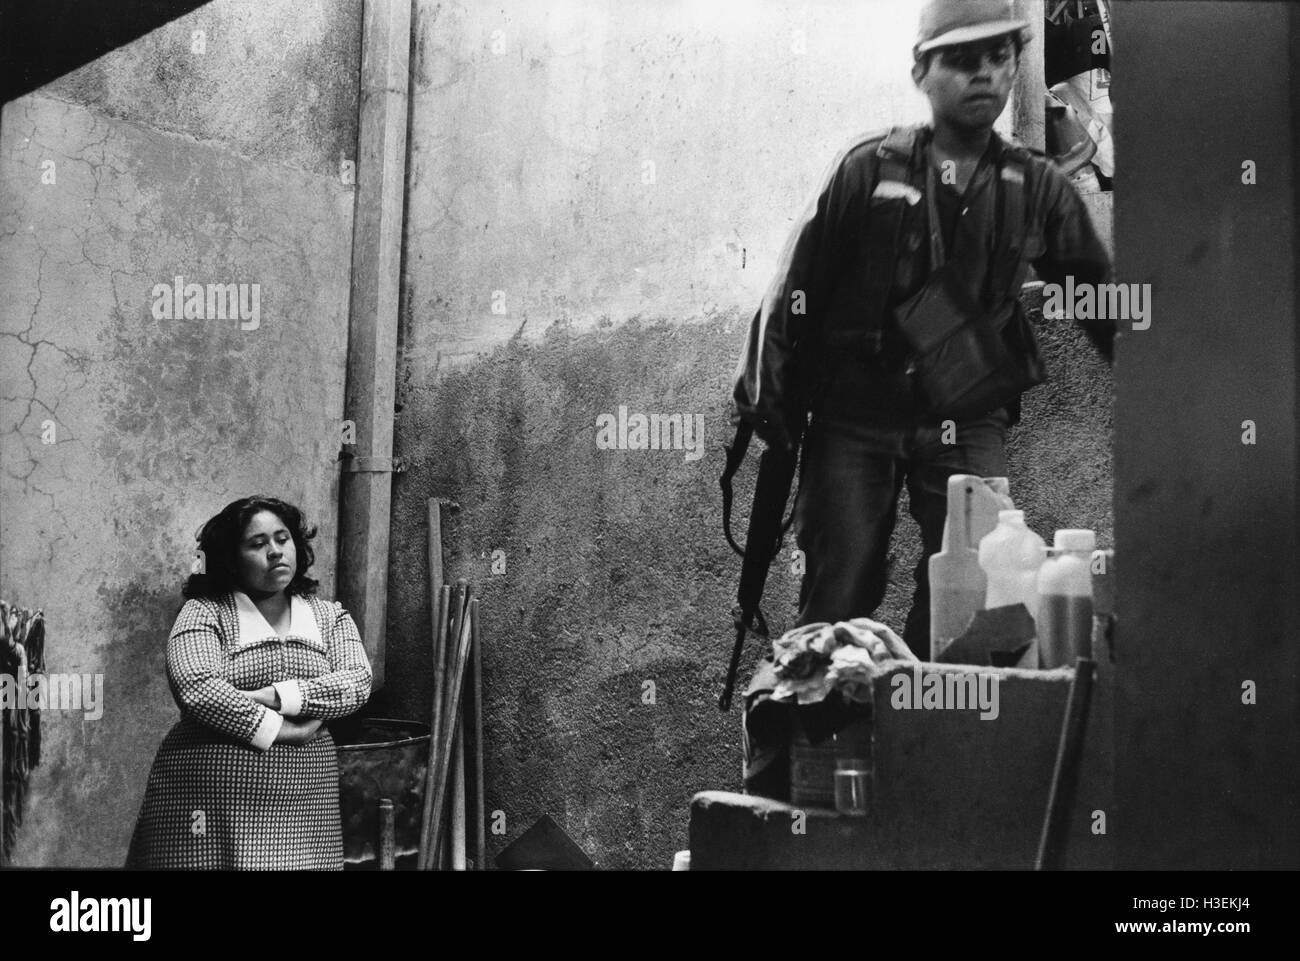 SAN SALVADOR, EL SALVADOR, Mars 1984 : armée salvadorienne mener des perquisitions maison par maison dans la capitale. Banque D'Images